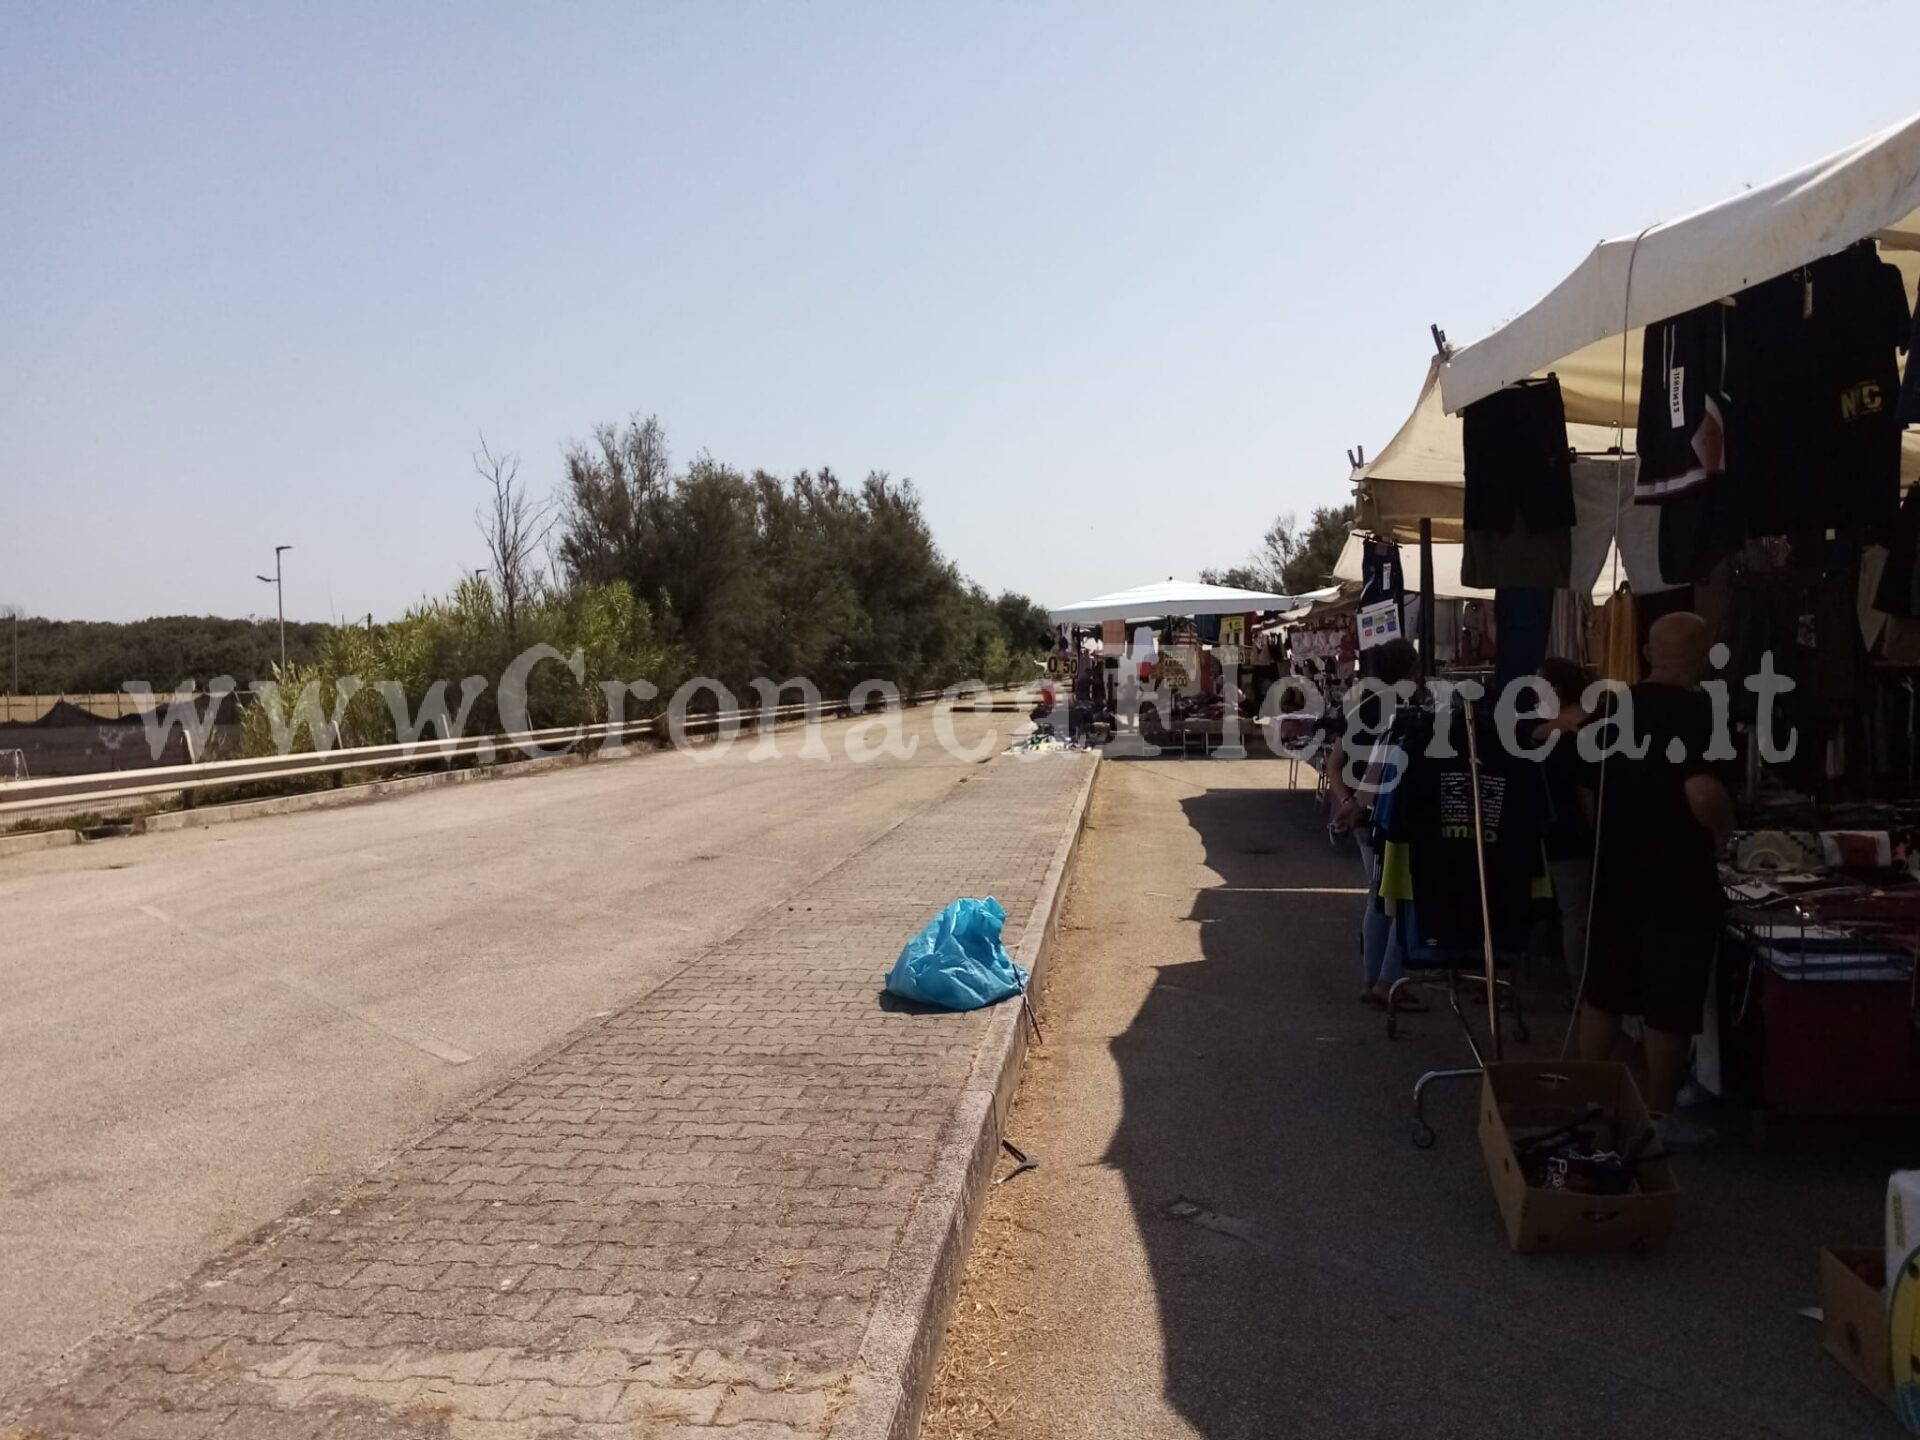 Deserto il mercato itinerante a Licola: delusi gli ambulanti